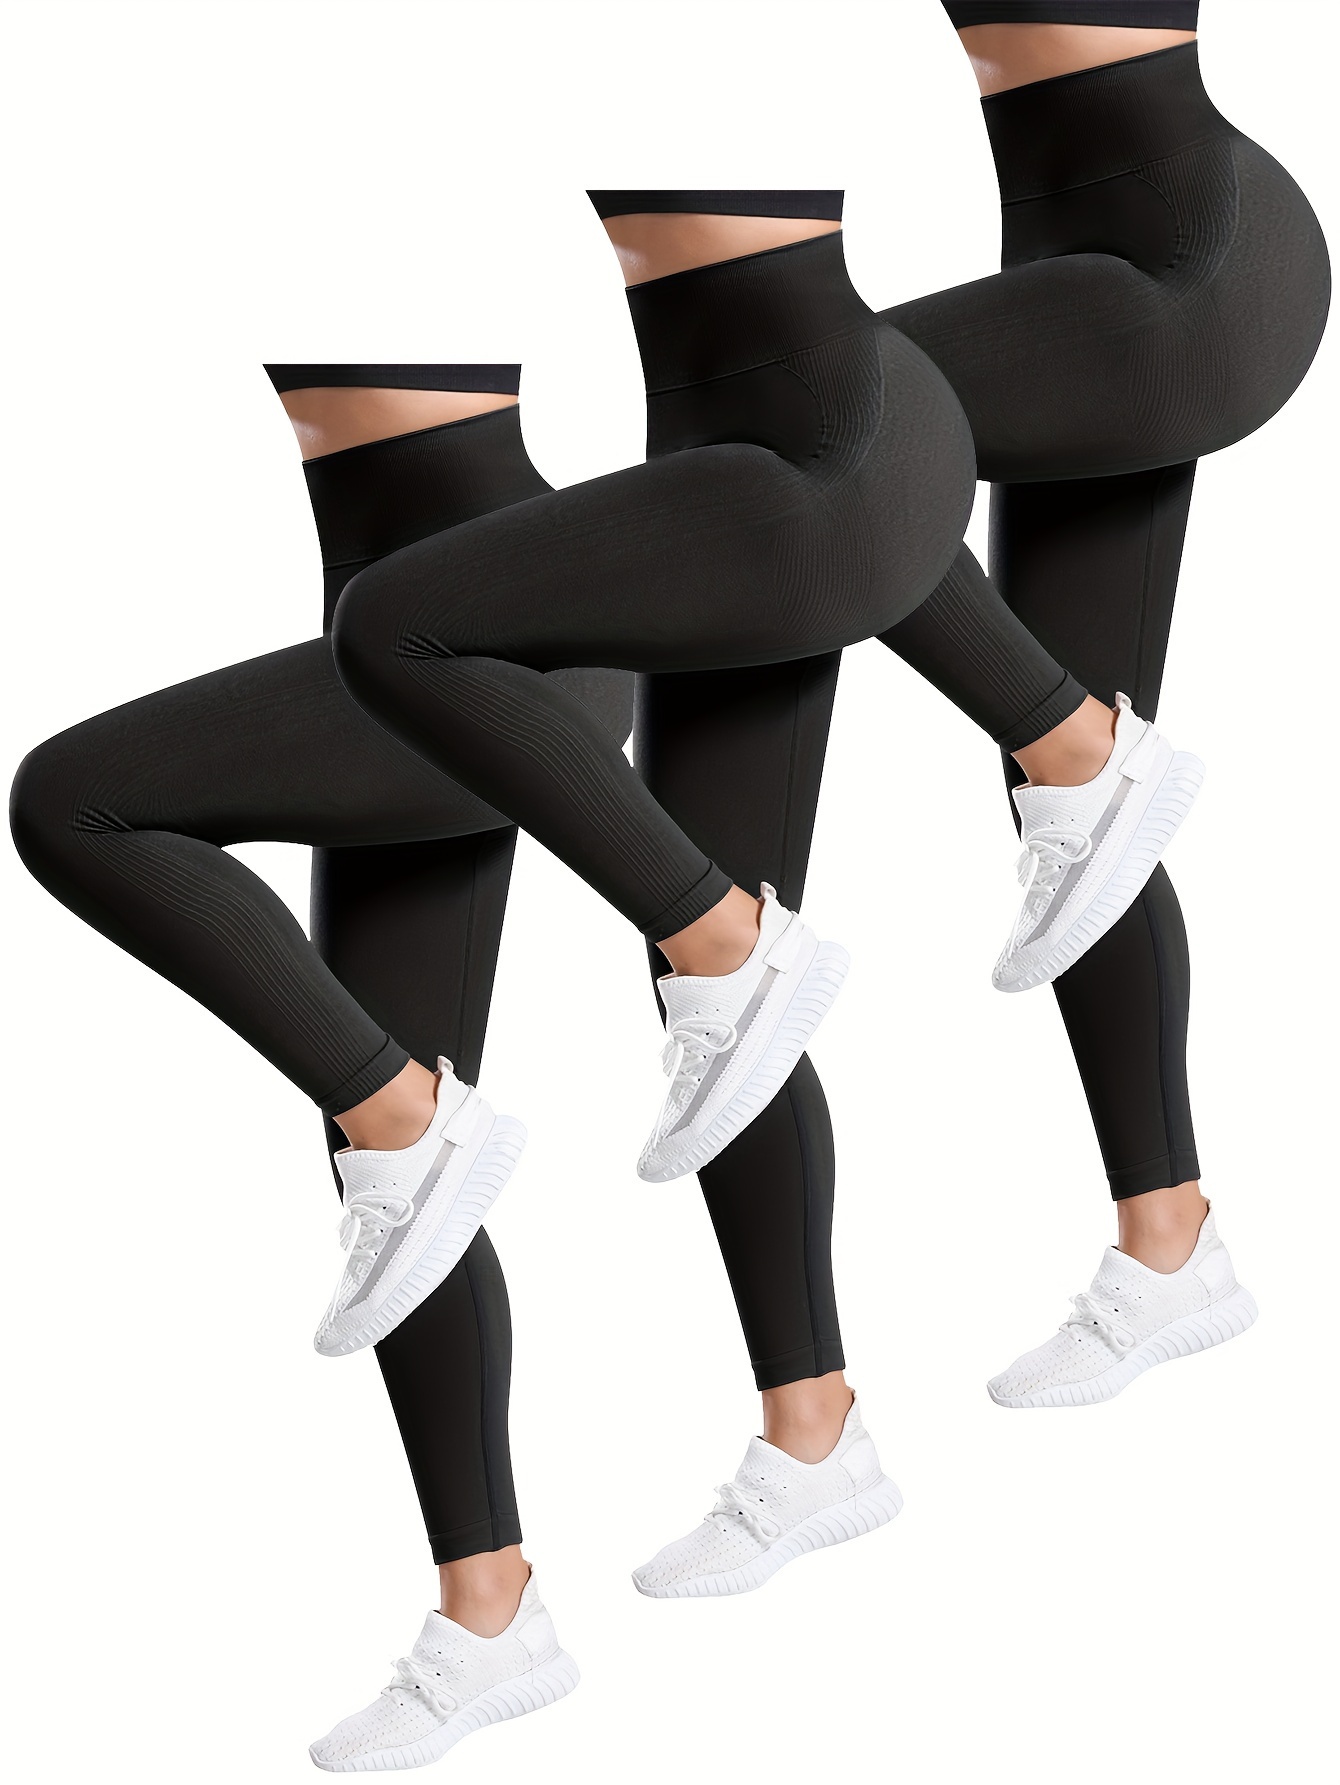 GetUSCart- BALEAF Women's 5 High Waist Workout Yoga Running